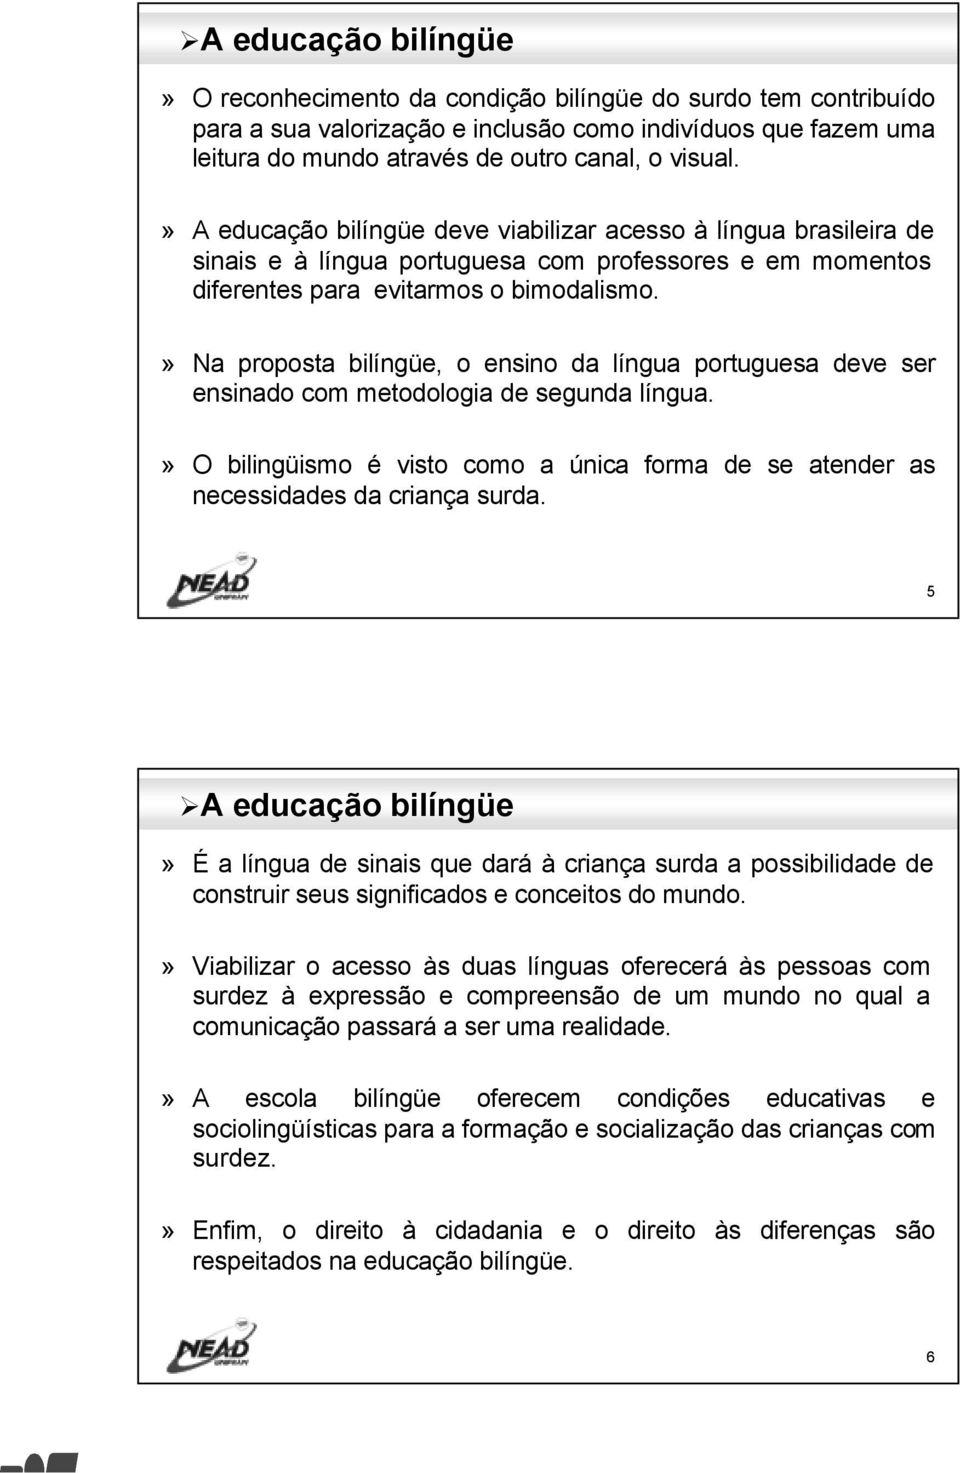 » Na proposta bilíngüe, o ensino da língua portuguesa deve ser ensinado com metodologia de segunda língua.» O bilingüismo é visto como a única forma de se atender as necessidades da criança surda.